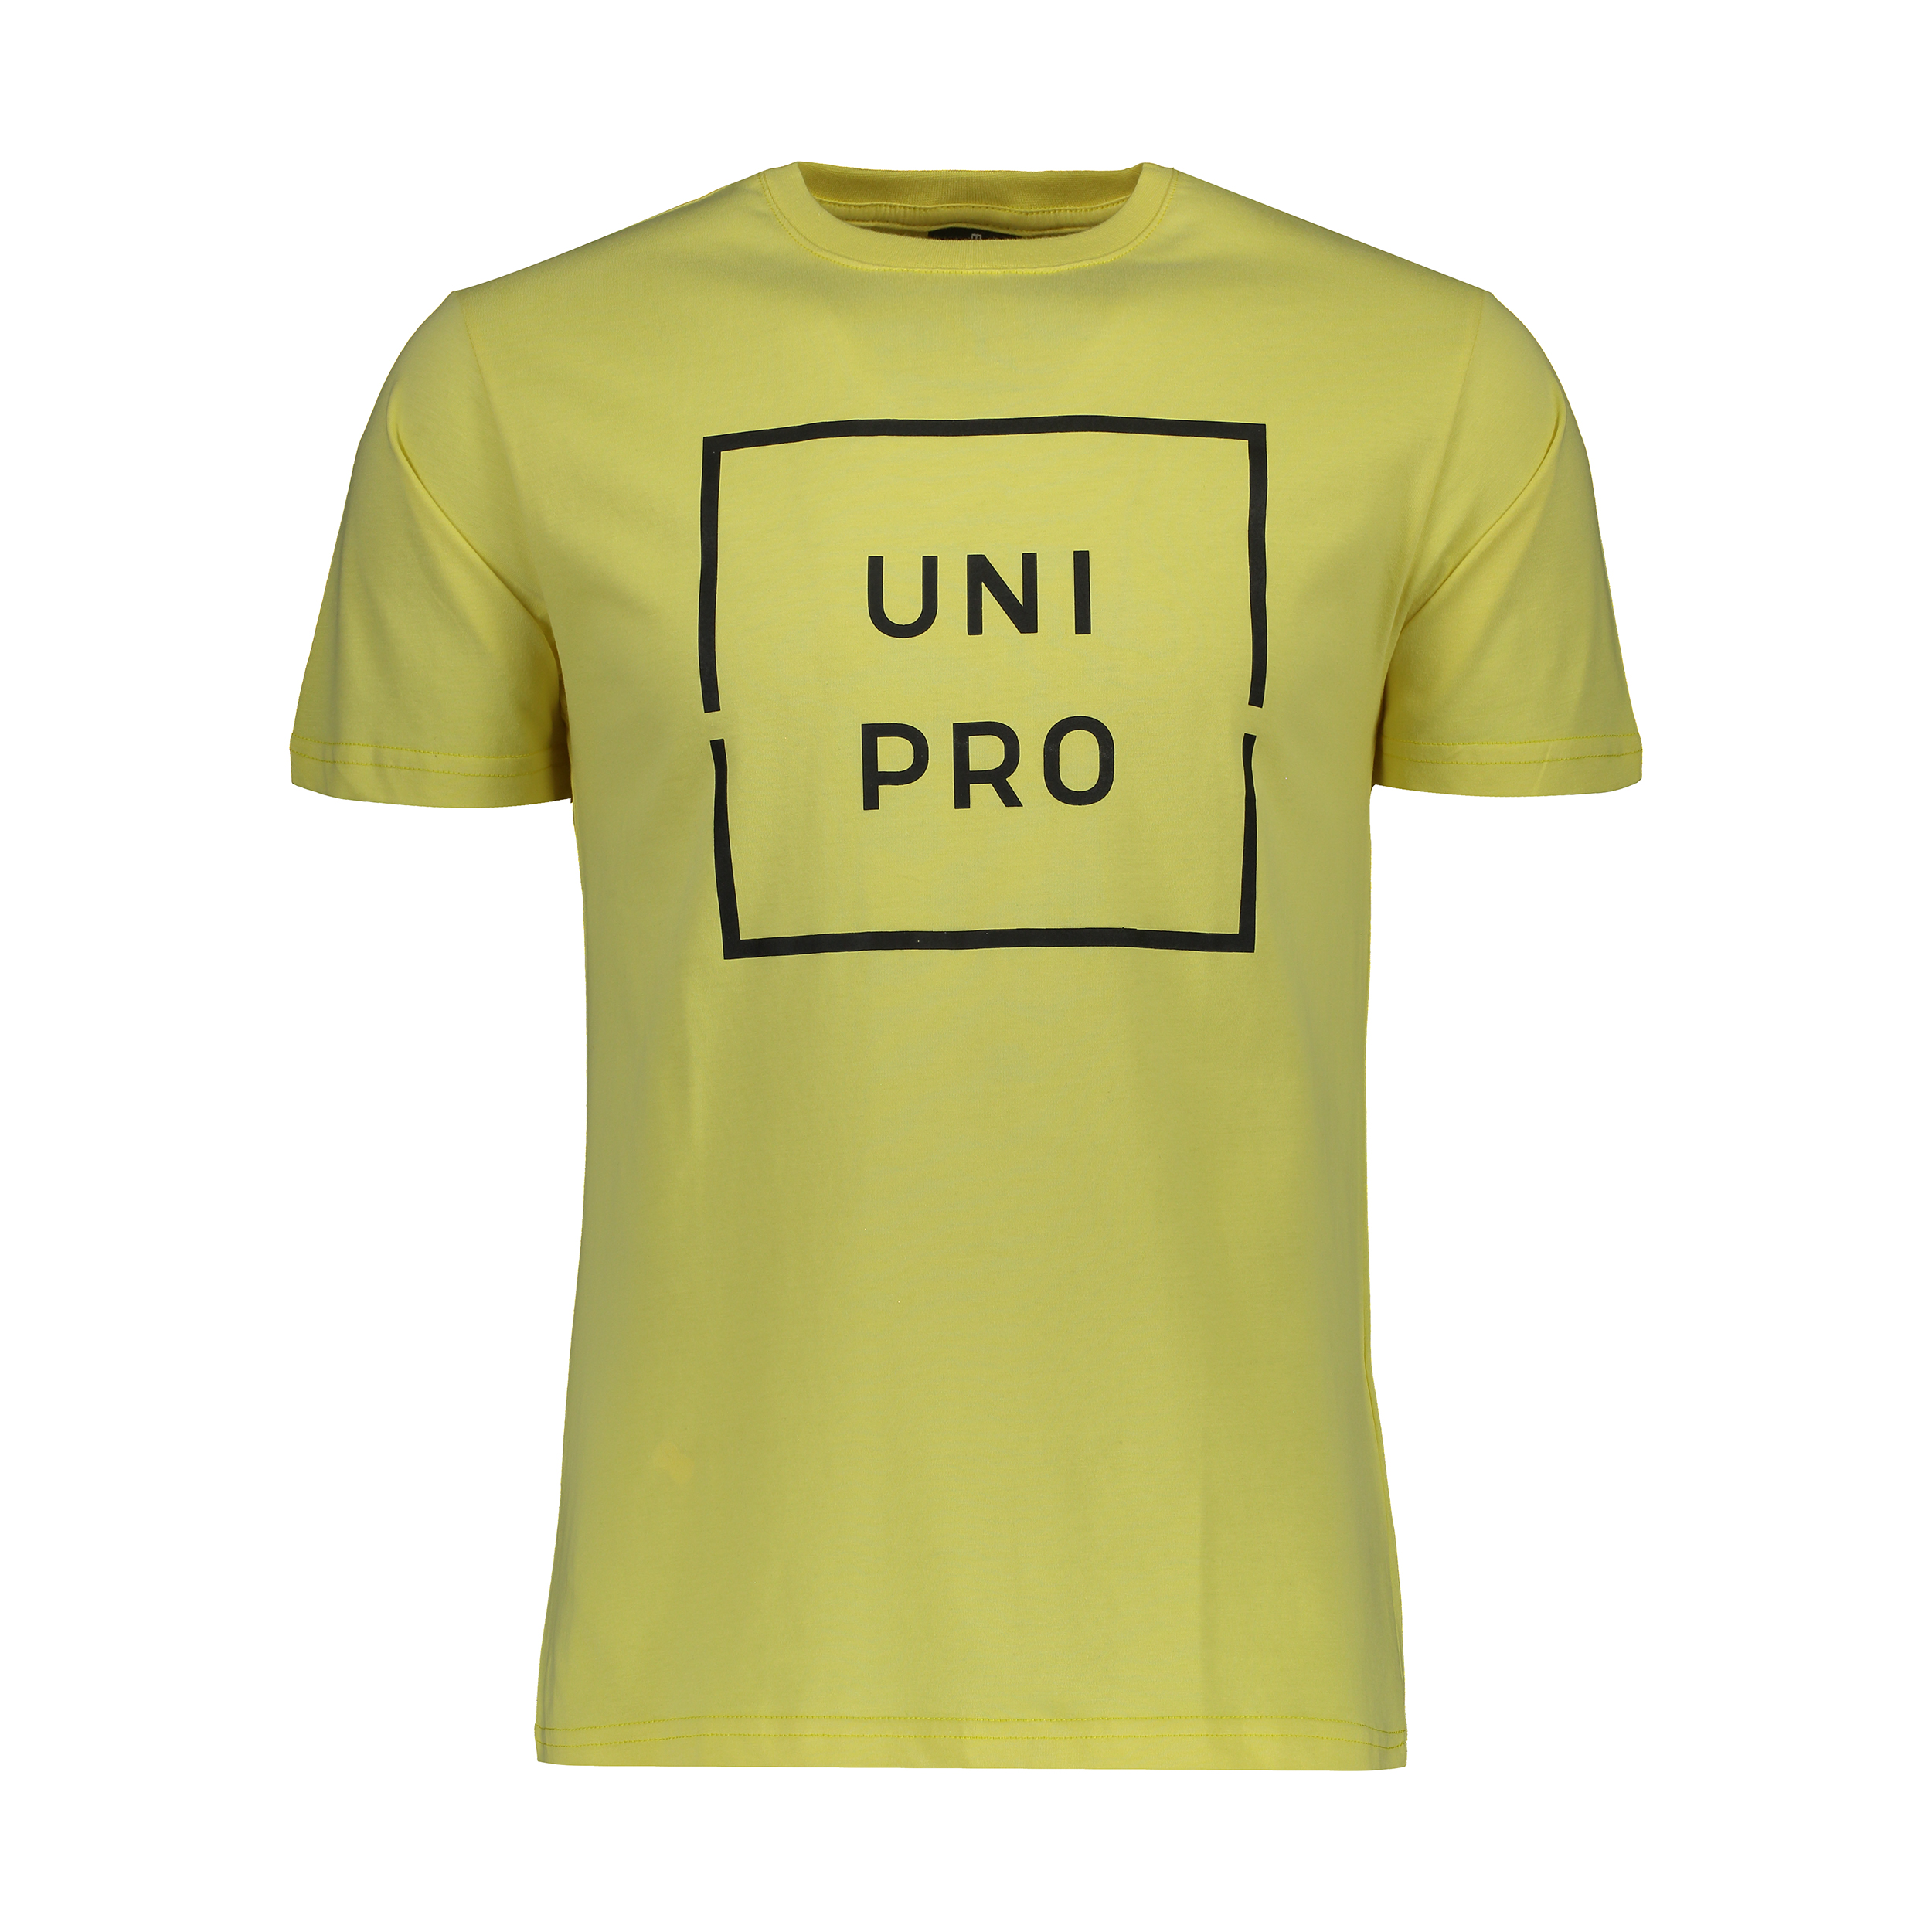 تی شرت ورزشی مردانه یونی پرو مدل 914110124-21